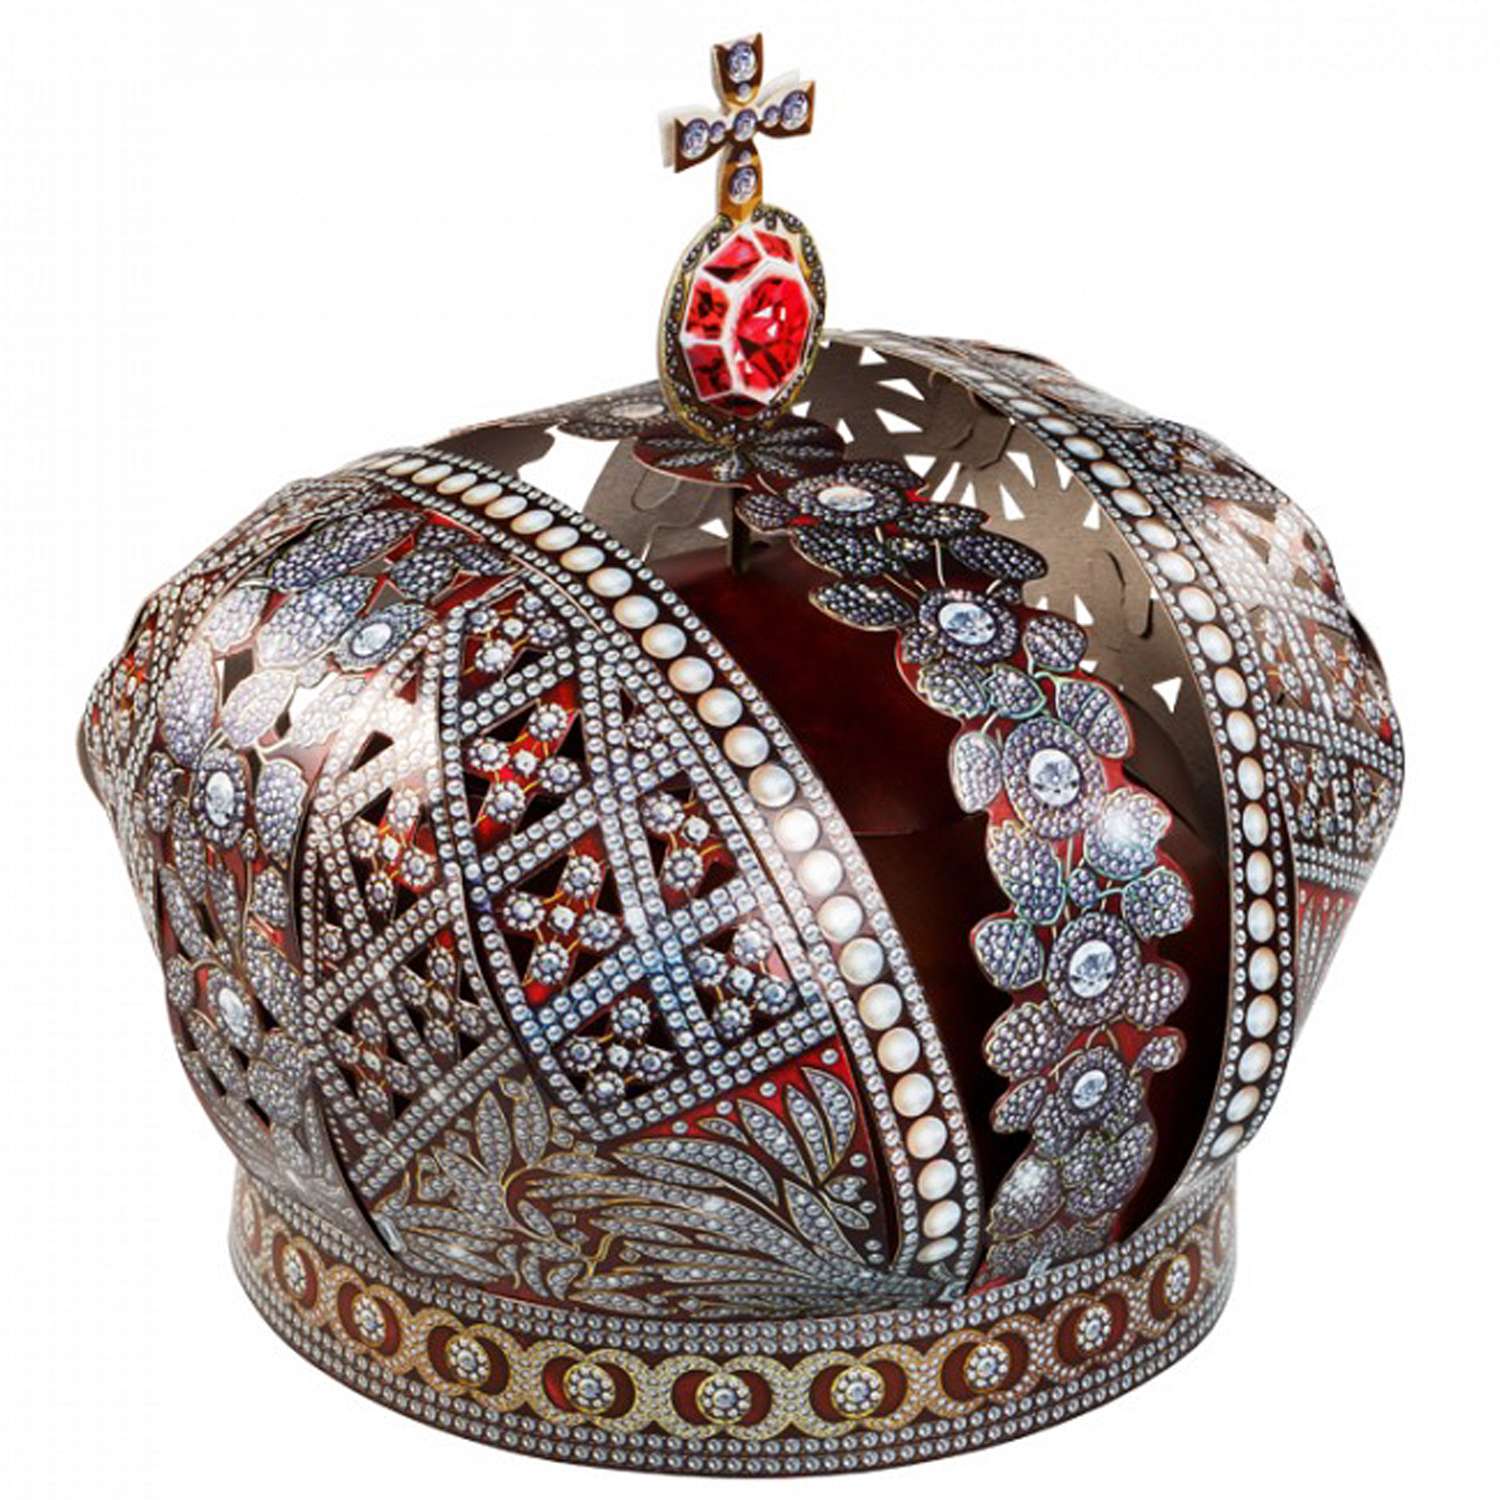 Игрушка из картона Умная бумага Корона Российской империи 554 554 - фото 2